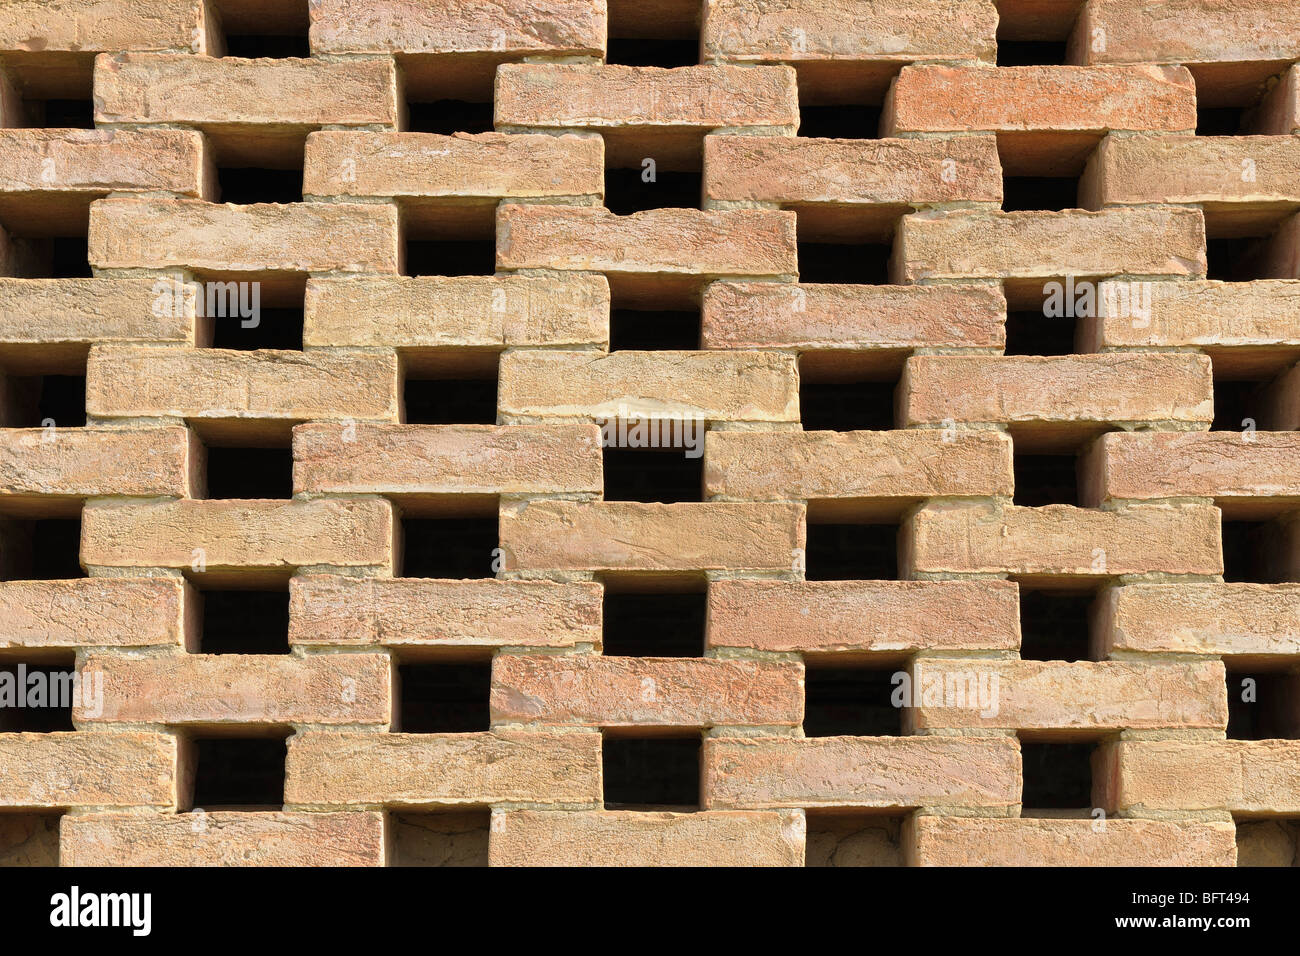 Wall of Bricks Stock Photo